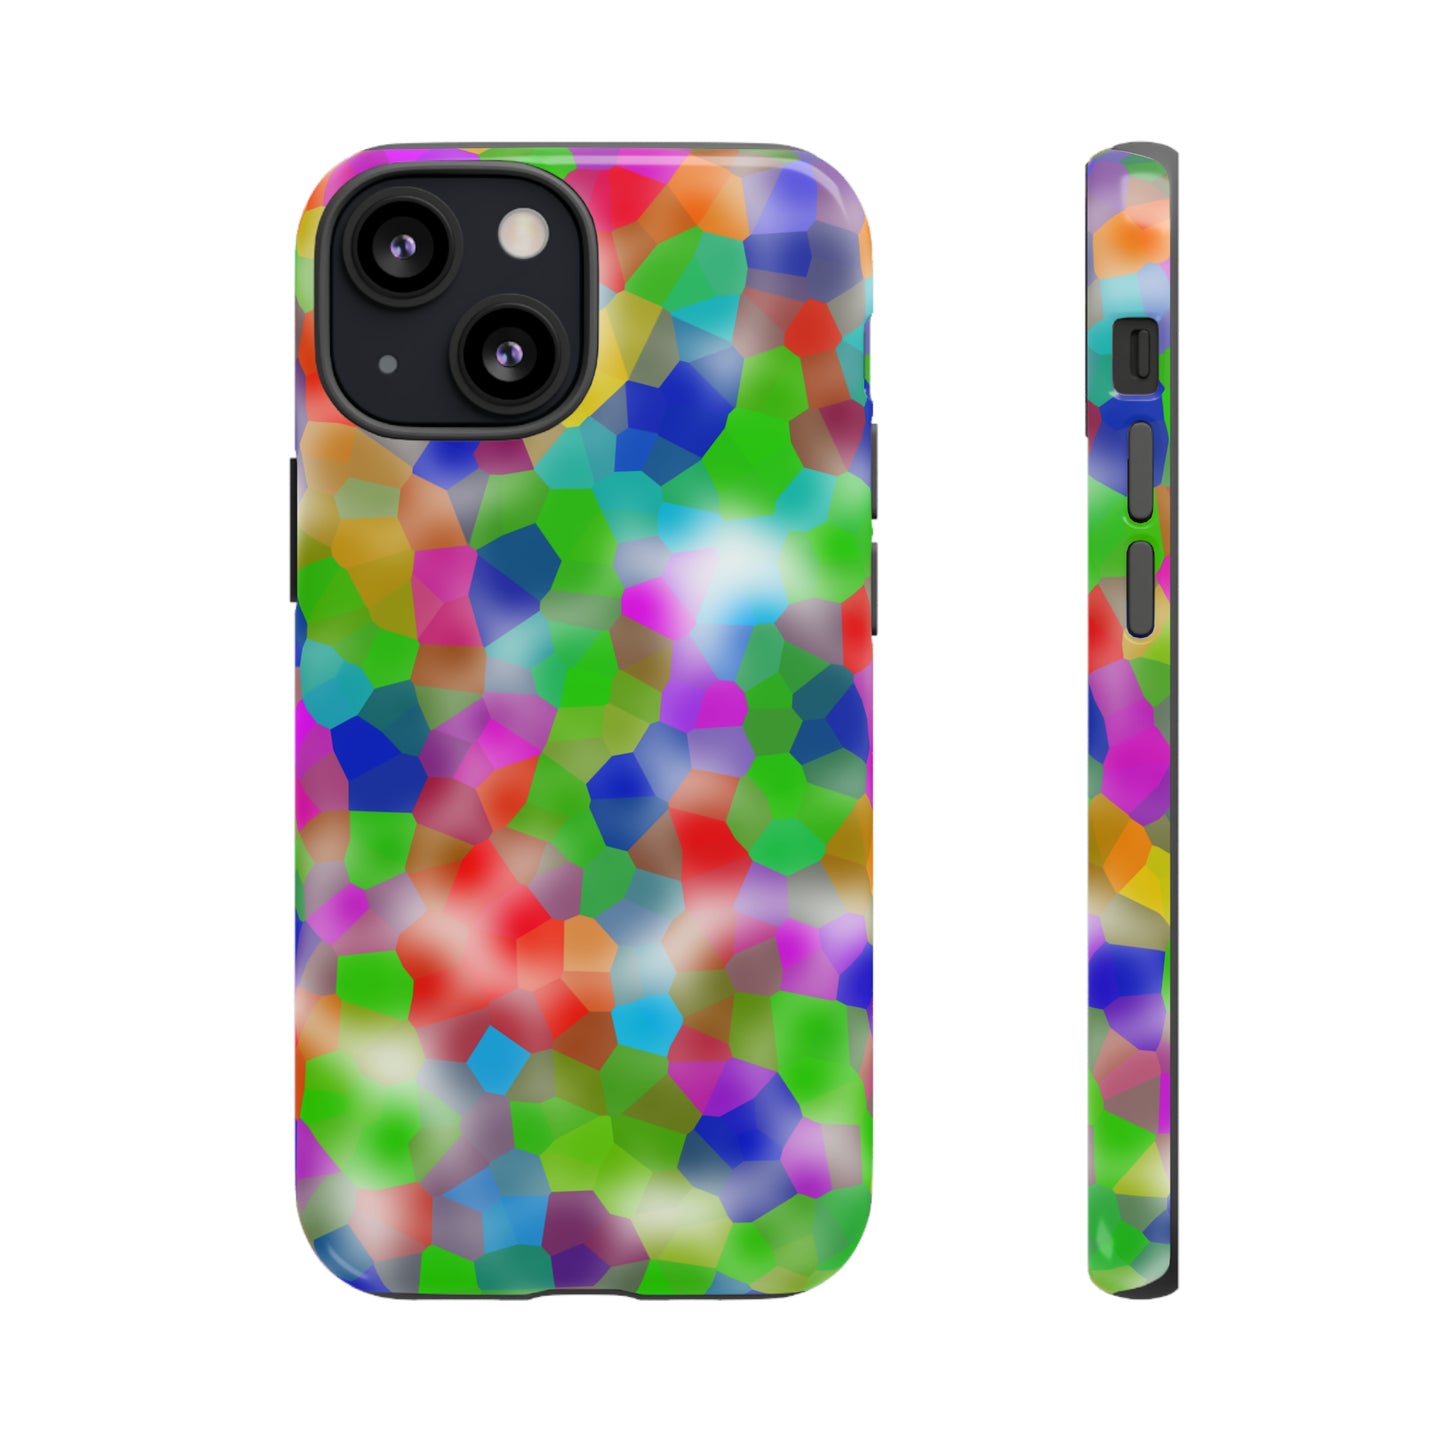 Chromatic | Hardshell Dual Layer Phone Case